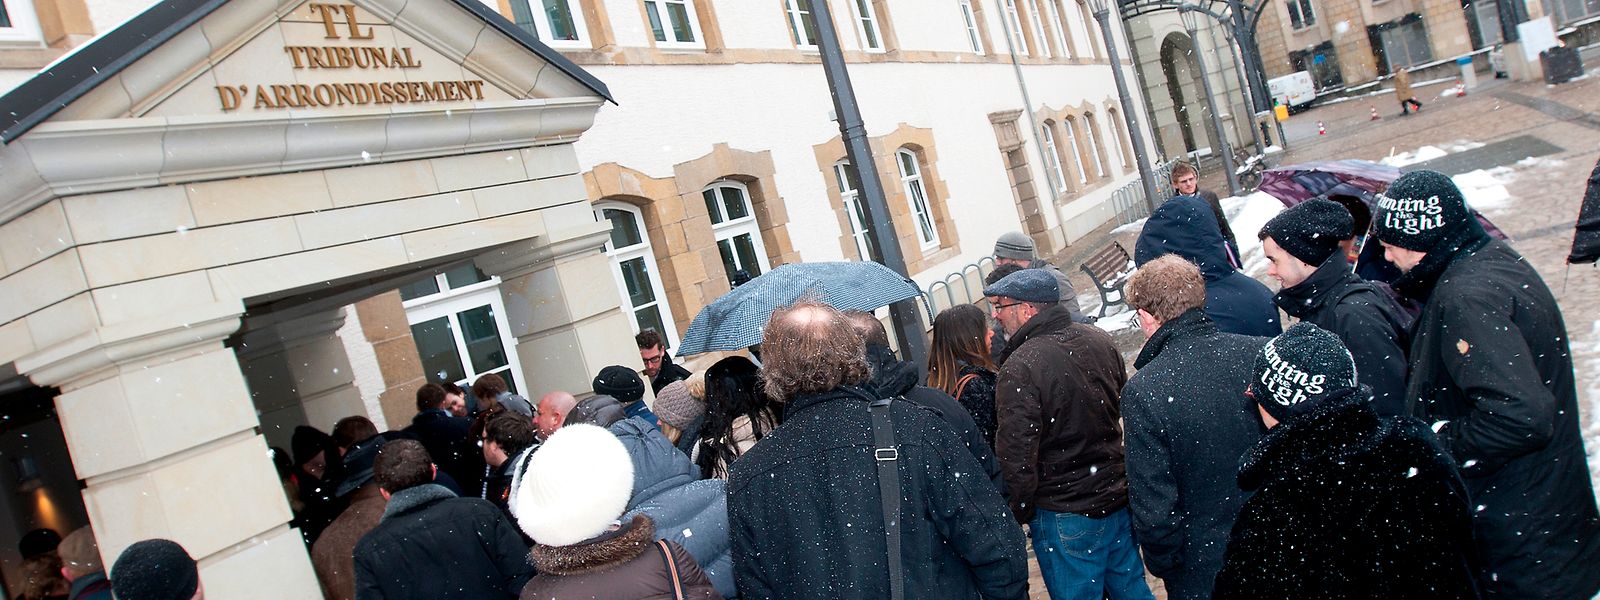 Vor sieben Jahren: Vor dem Bezirksgericht Luxemburg drängt sich am 25. Februar 2013 eine Menschentraube, die sich den Auftakt im Bommeleeër-Prozess nicht entgehen lassen will.